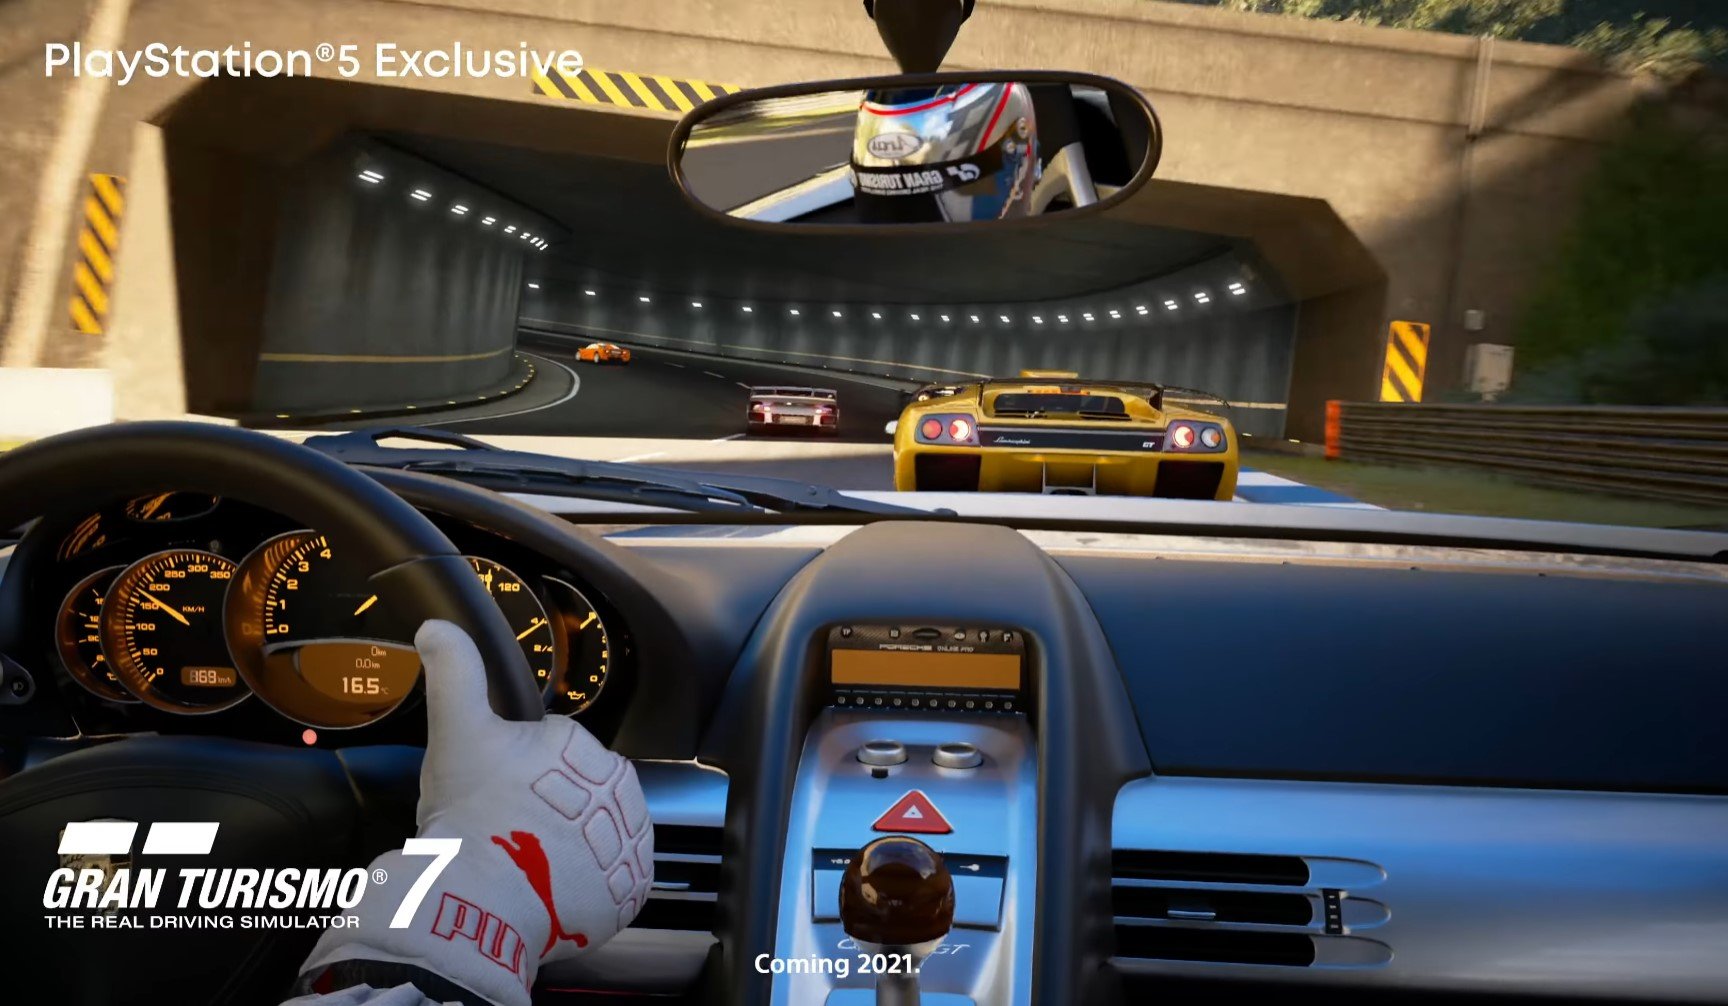 خرید بازی Gran Turismo 7 پلی استیشن 5